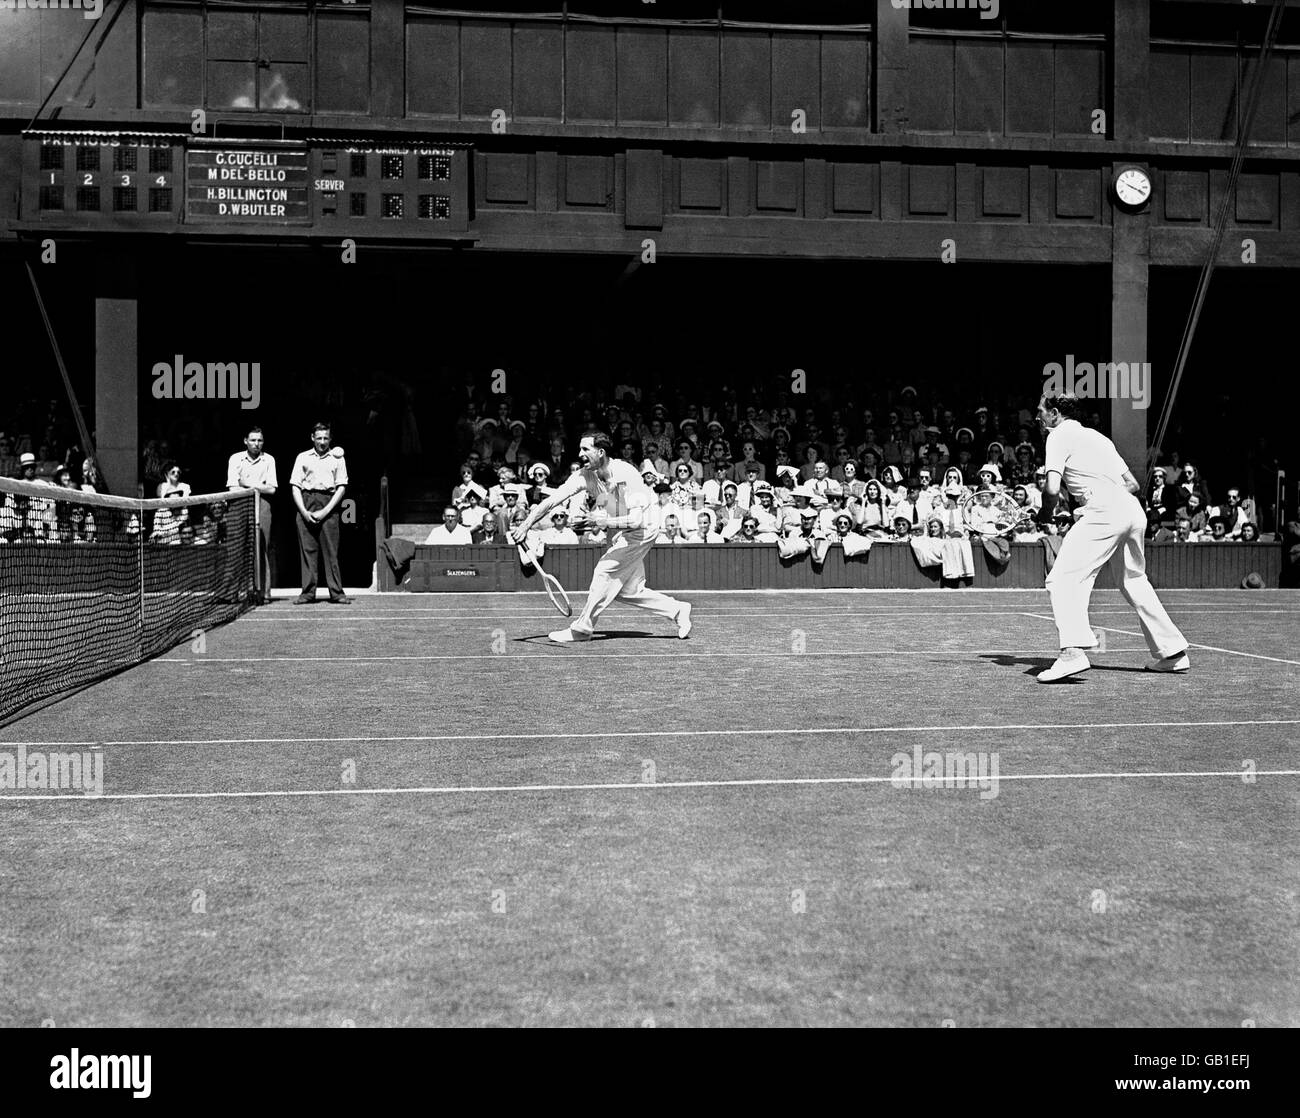 Henry Billington (l) en action avec D. W. Butler (r) pendant les doubles hommes à Wimbledon. Billington est le grand-père de Tim Henman Banque D'Images